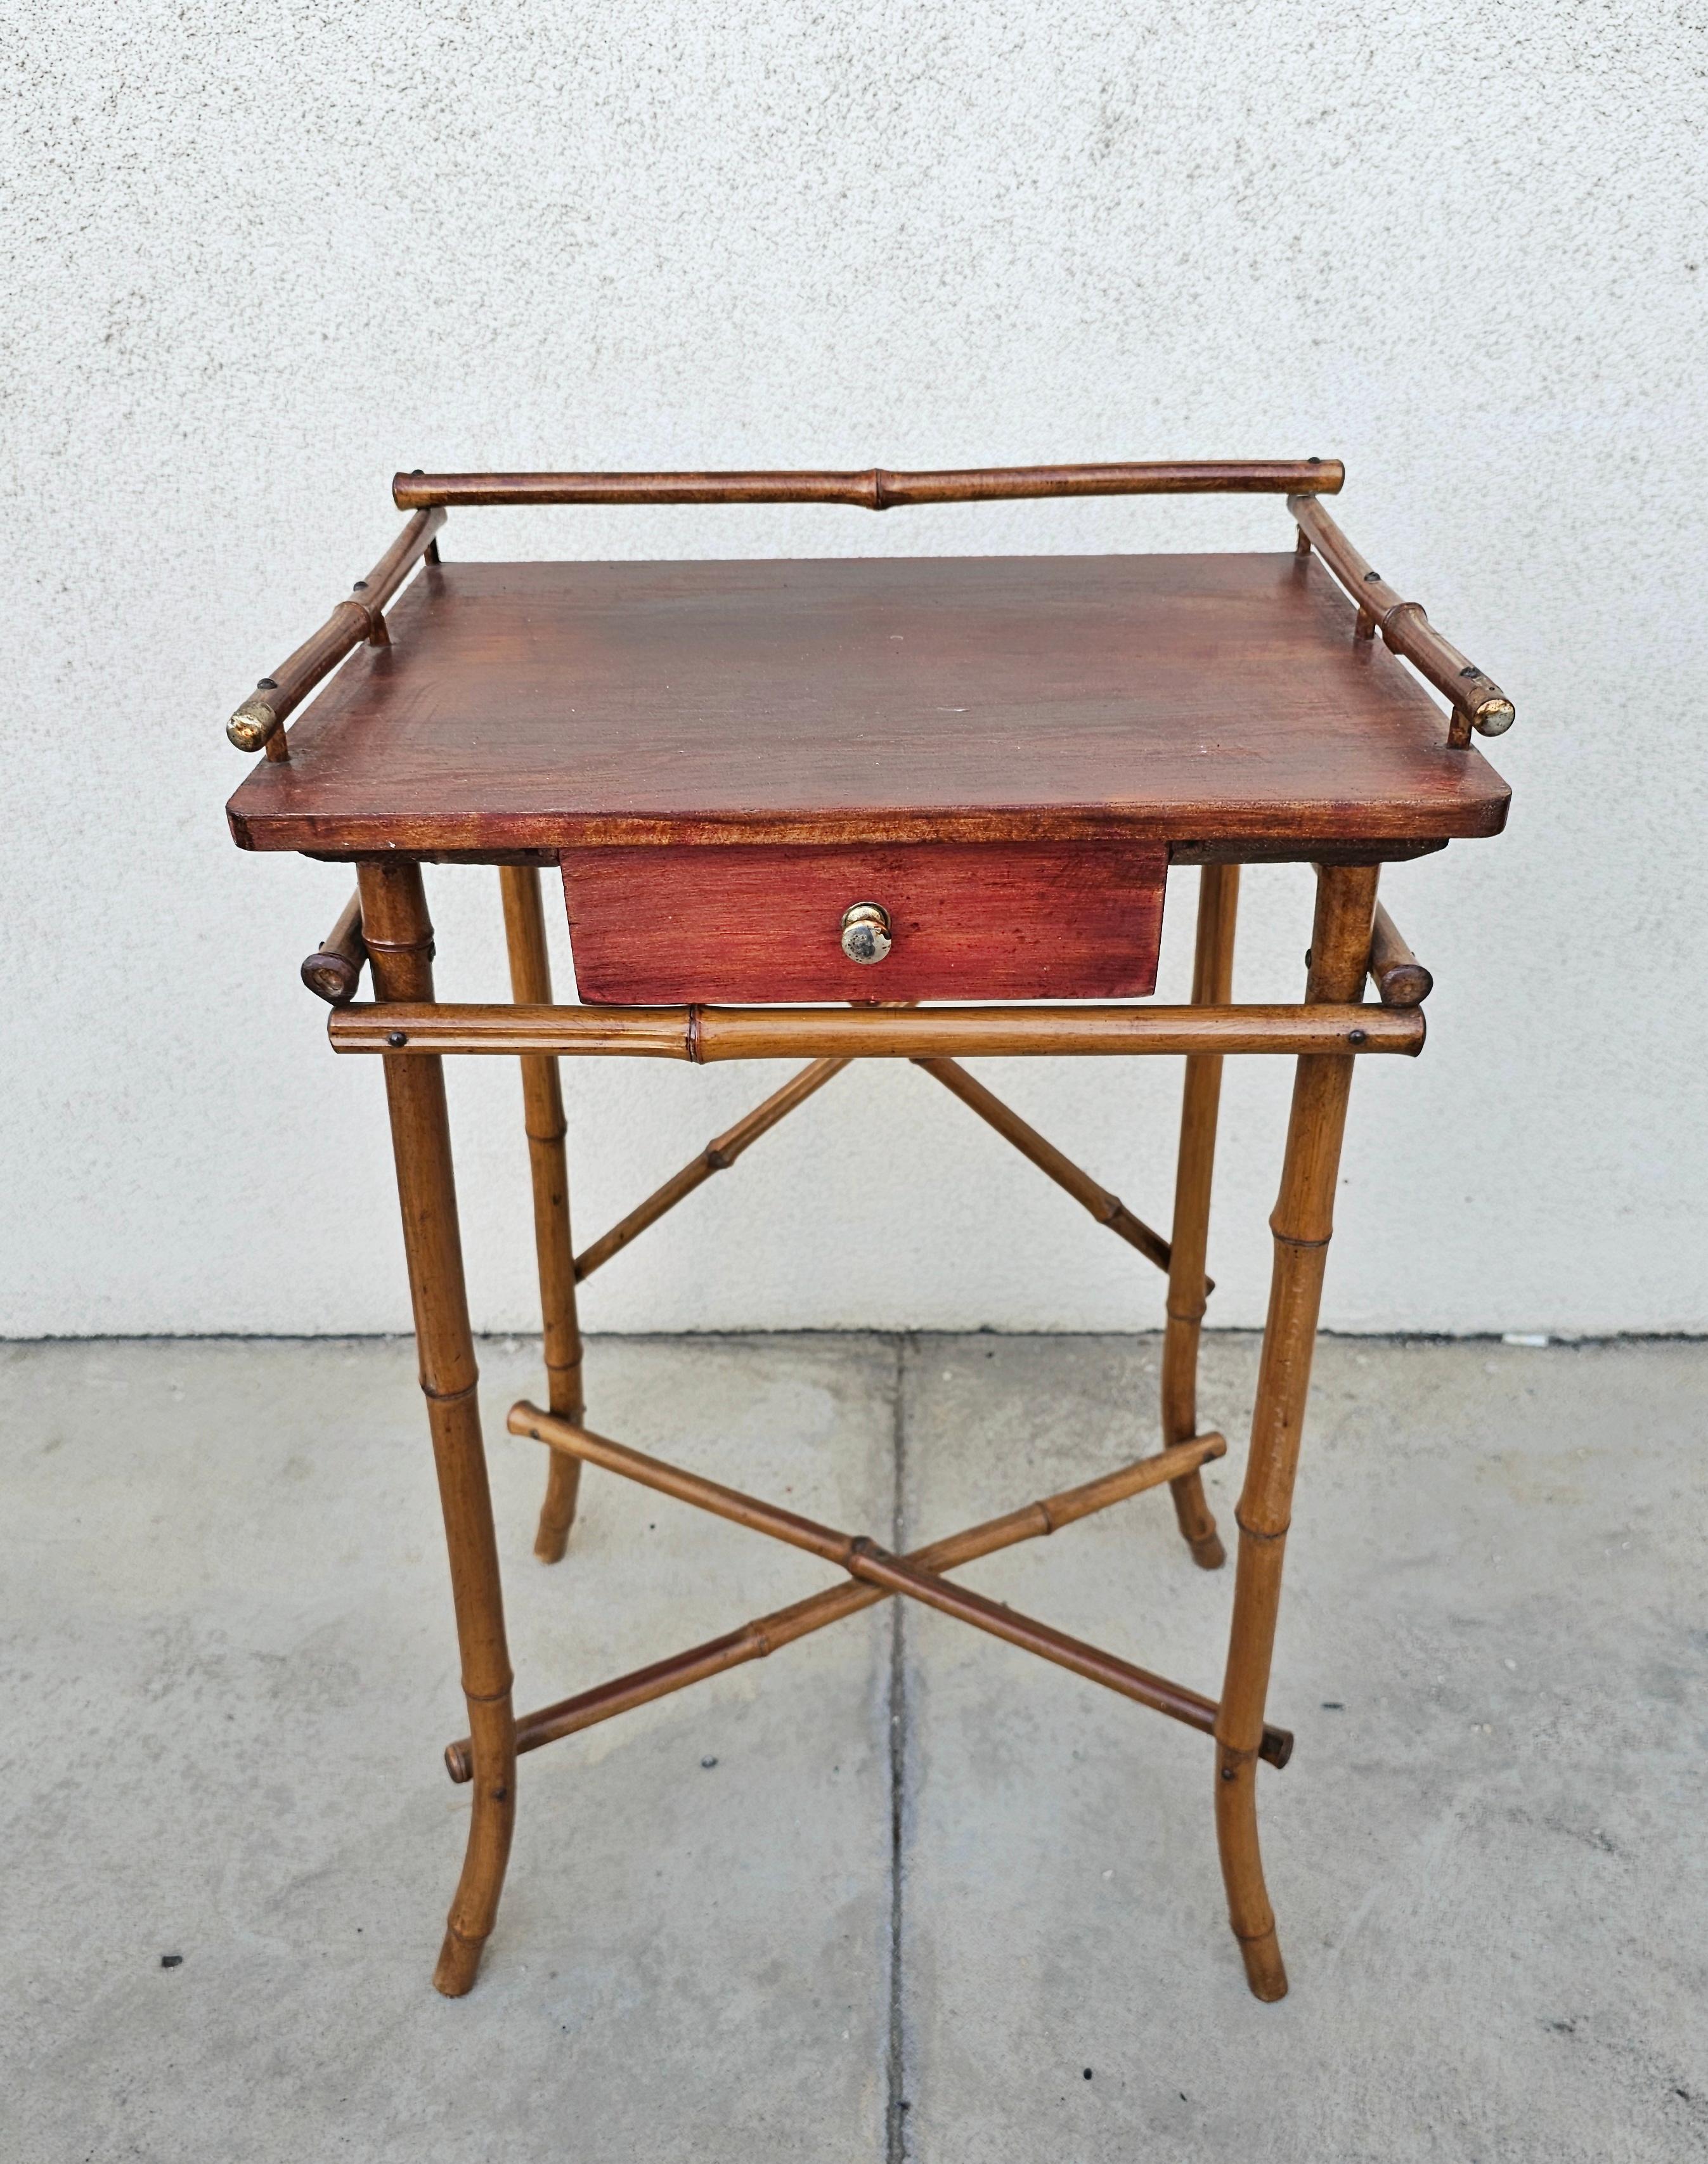 Vous trouverez dans cette annonce une magnifique et très rare table à thé en bambou datant de la fin de l'époque victorienne. Il comporte un petit tiroir. Cette petite beauté a été fabriquée en Angleterre à la fin du 19e siècle. Bon état antique